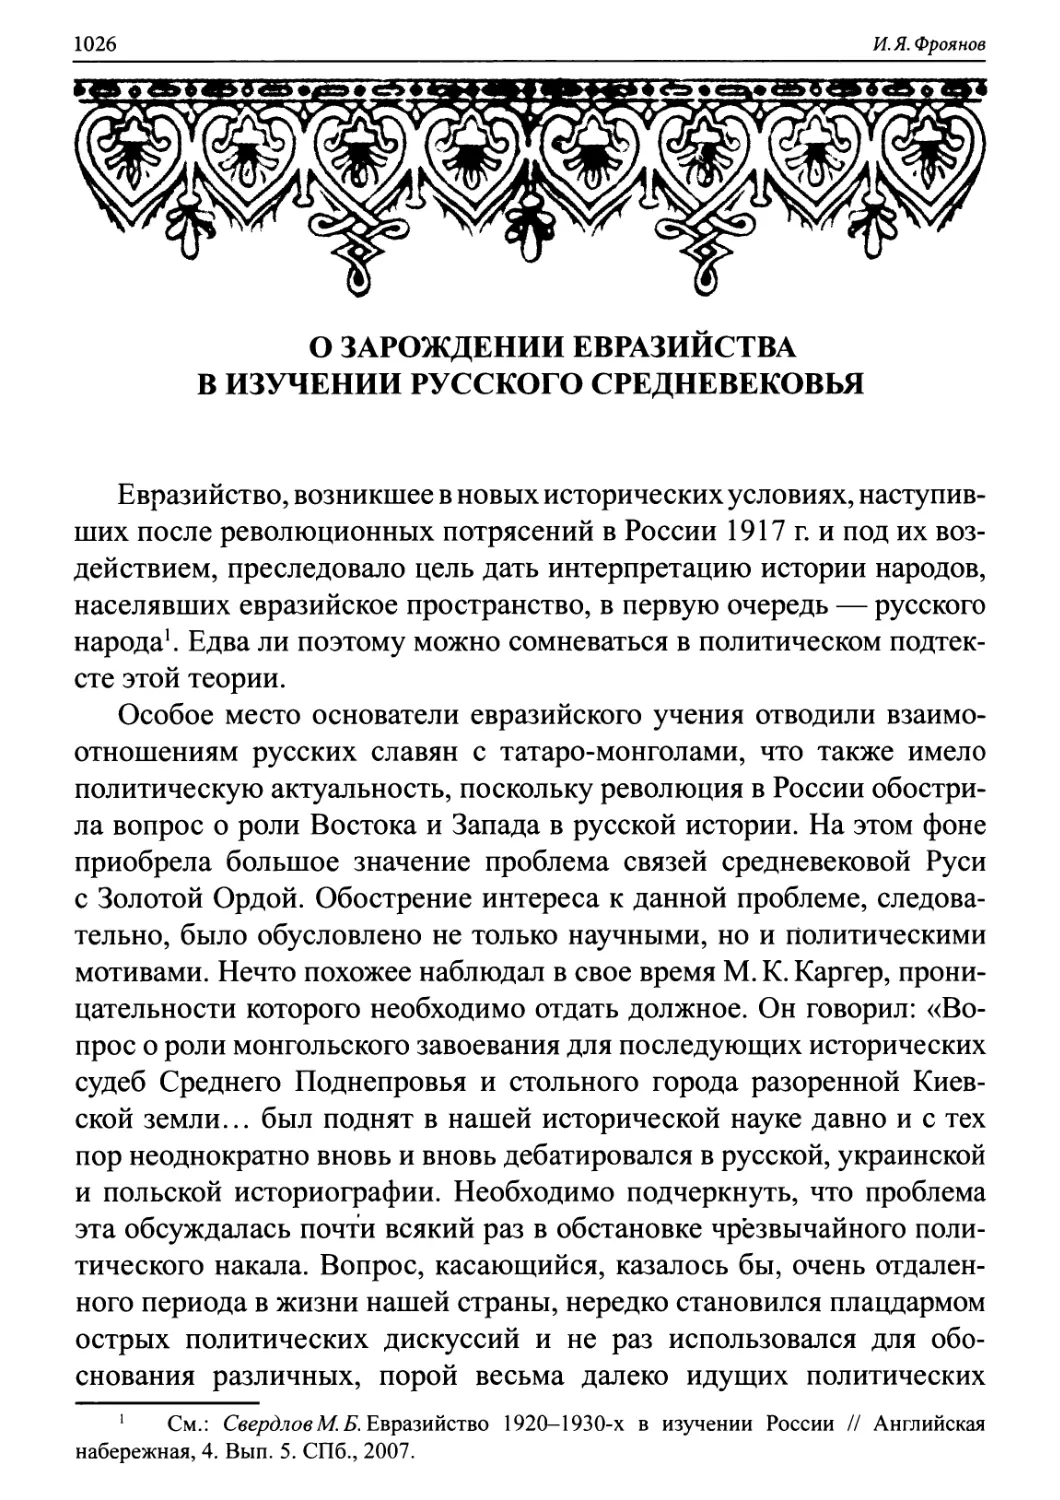 2. О зарождении евразийства в изучении русского средневековья